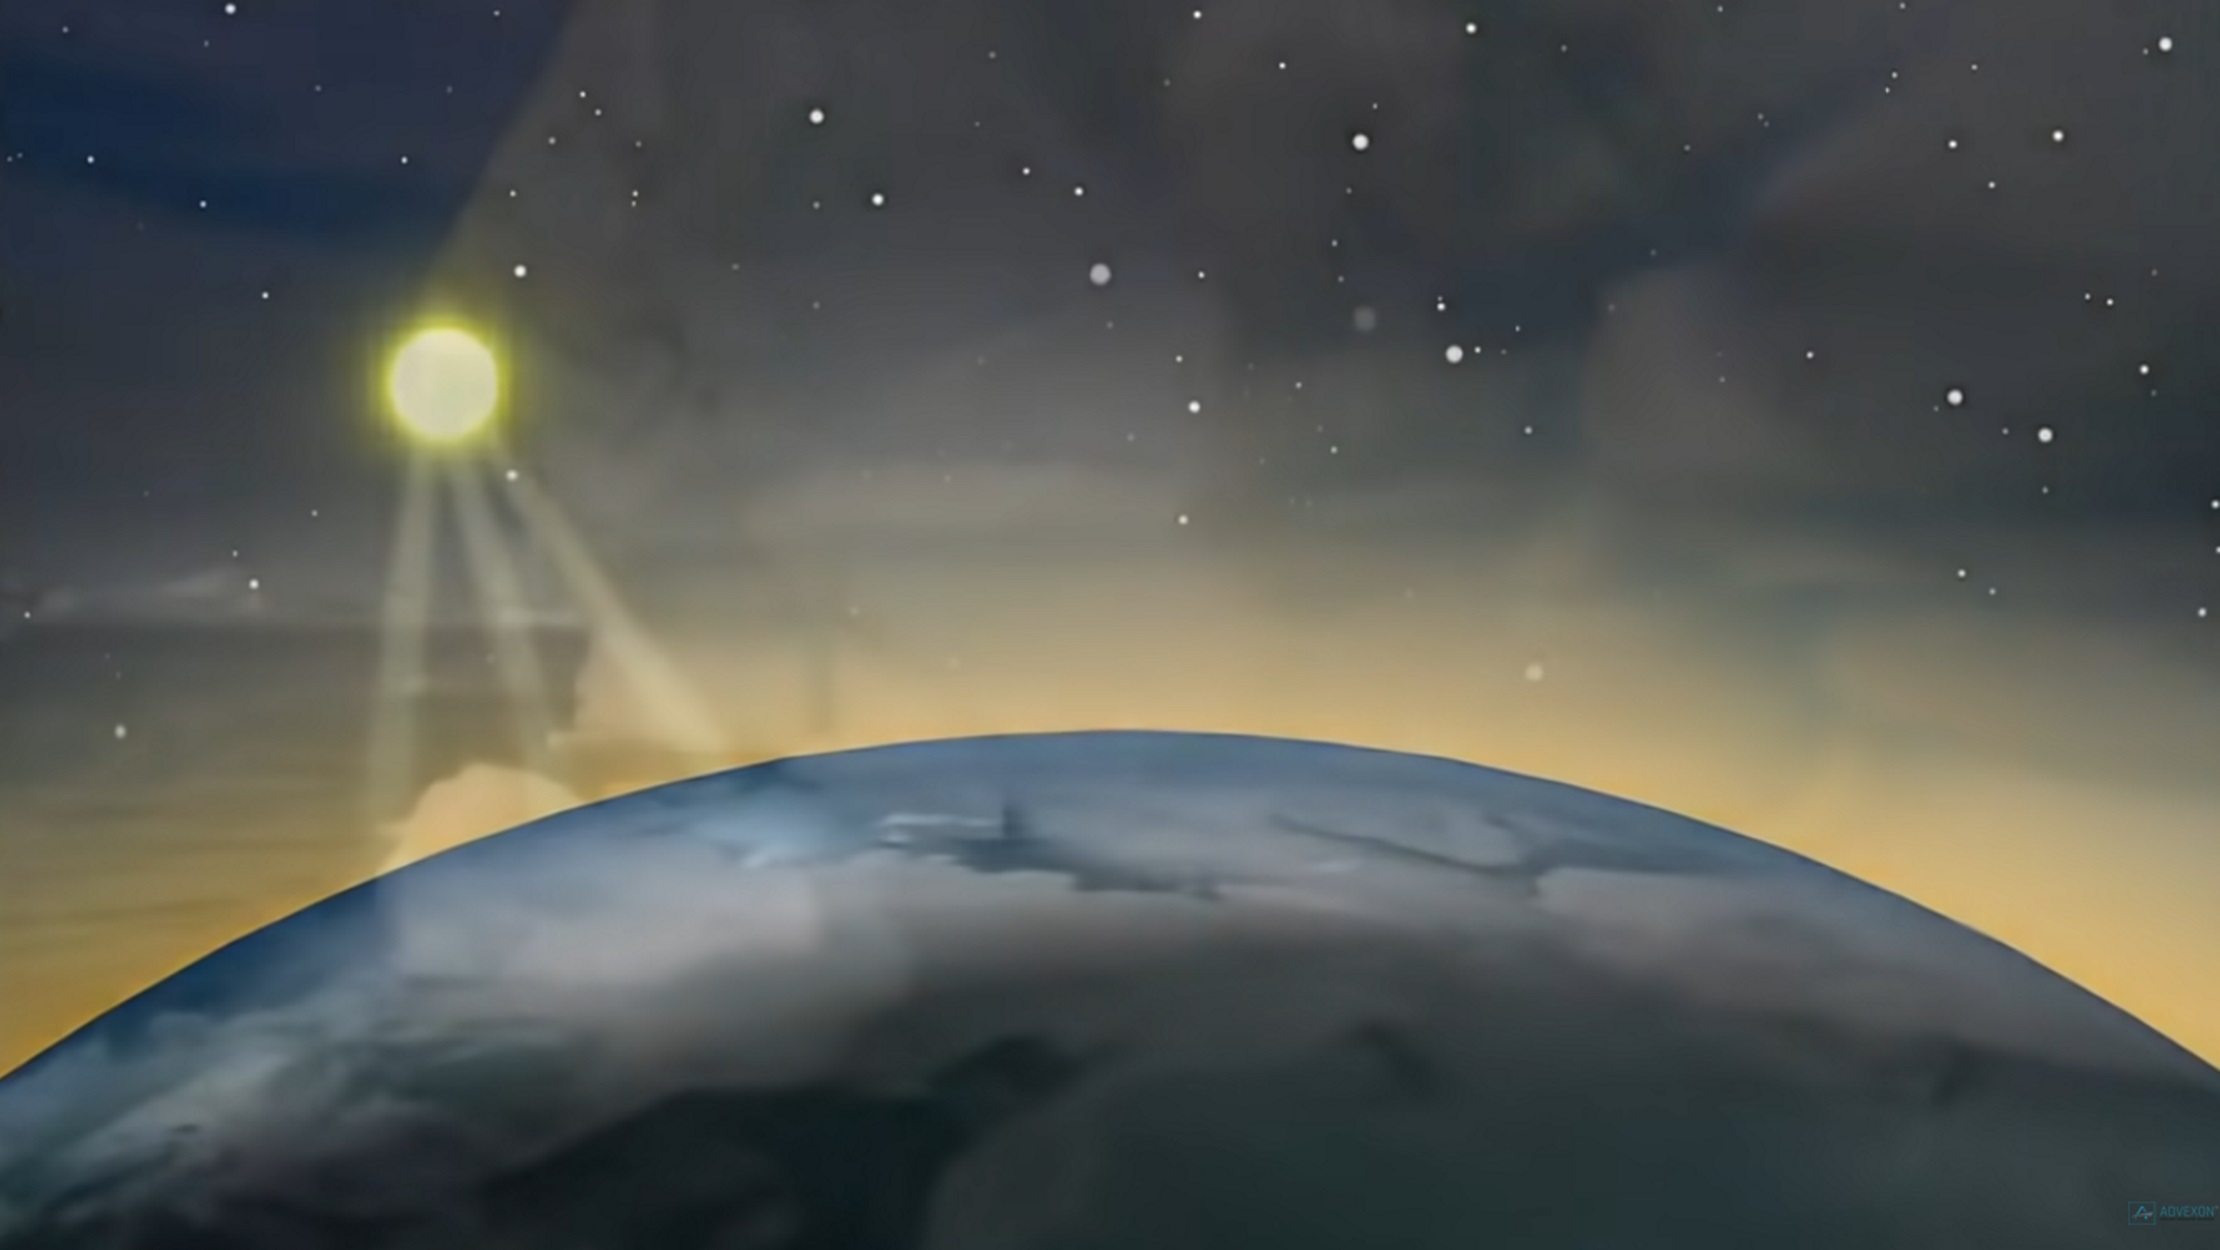 Ηράκλειο: Γνωστοποίησε την ανακάλυψη ενός νέου παγωμένου πλανήτη!